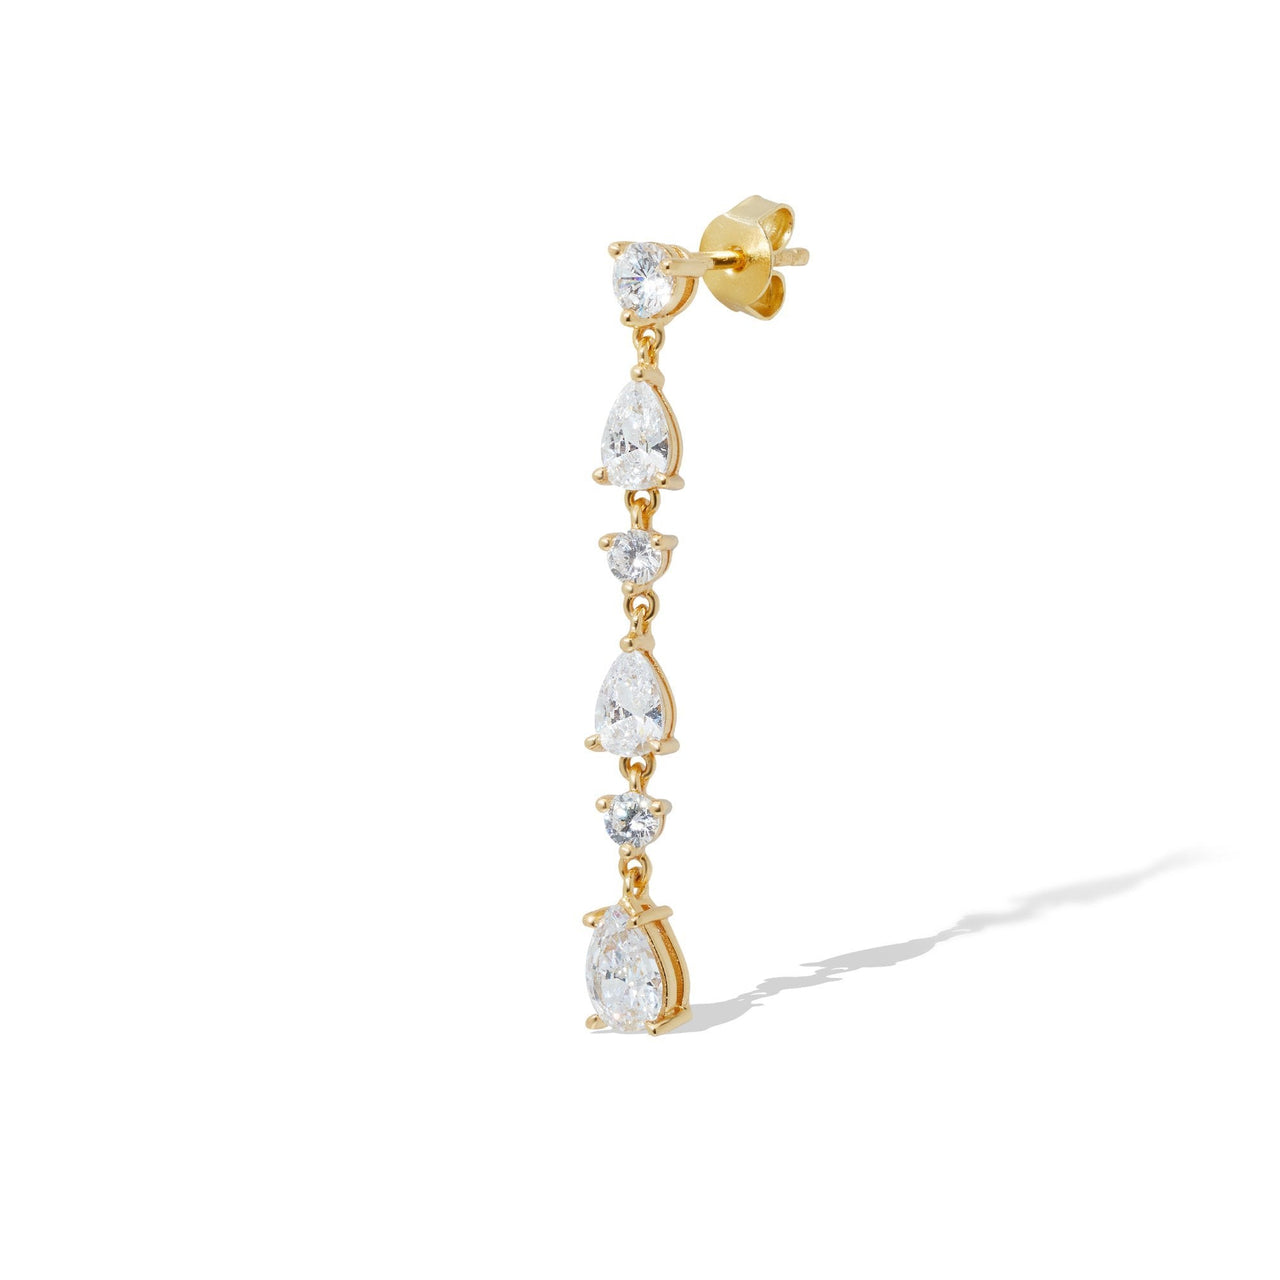 Single earring Kira Stud 1,5Gr 925 Strl Slvr Gold Plated